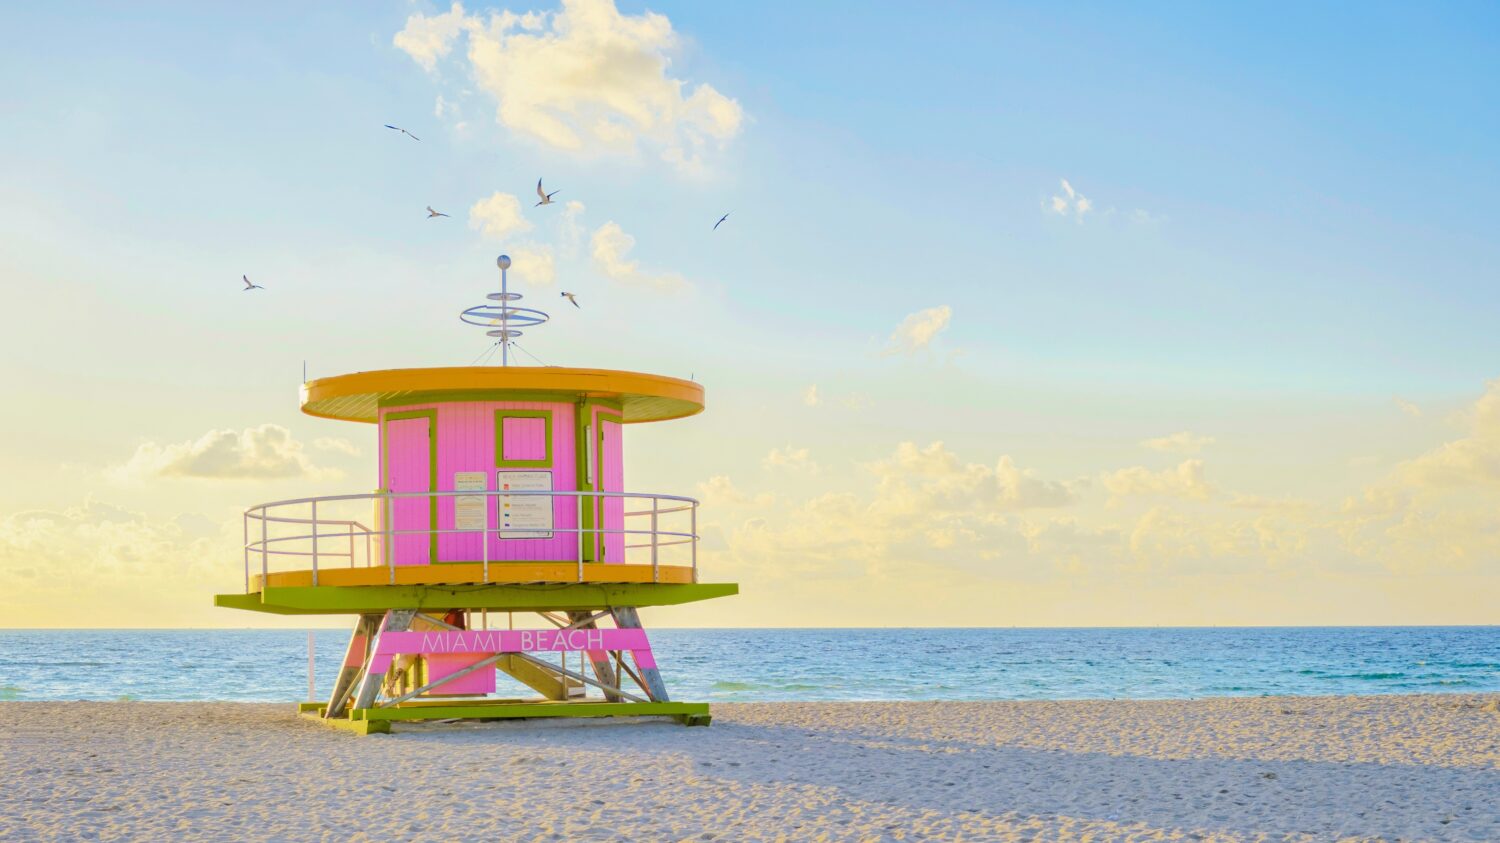 Capanna del bagnino sulla spiaggia a Miami Florida, capanna colorata sulla spiaggia durante l'alba Miami South Beach.  Giornata soleggiata sulla spiaggia